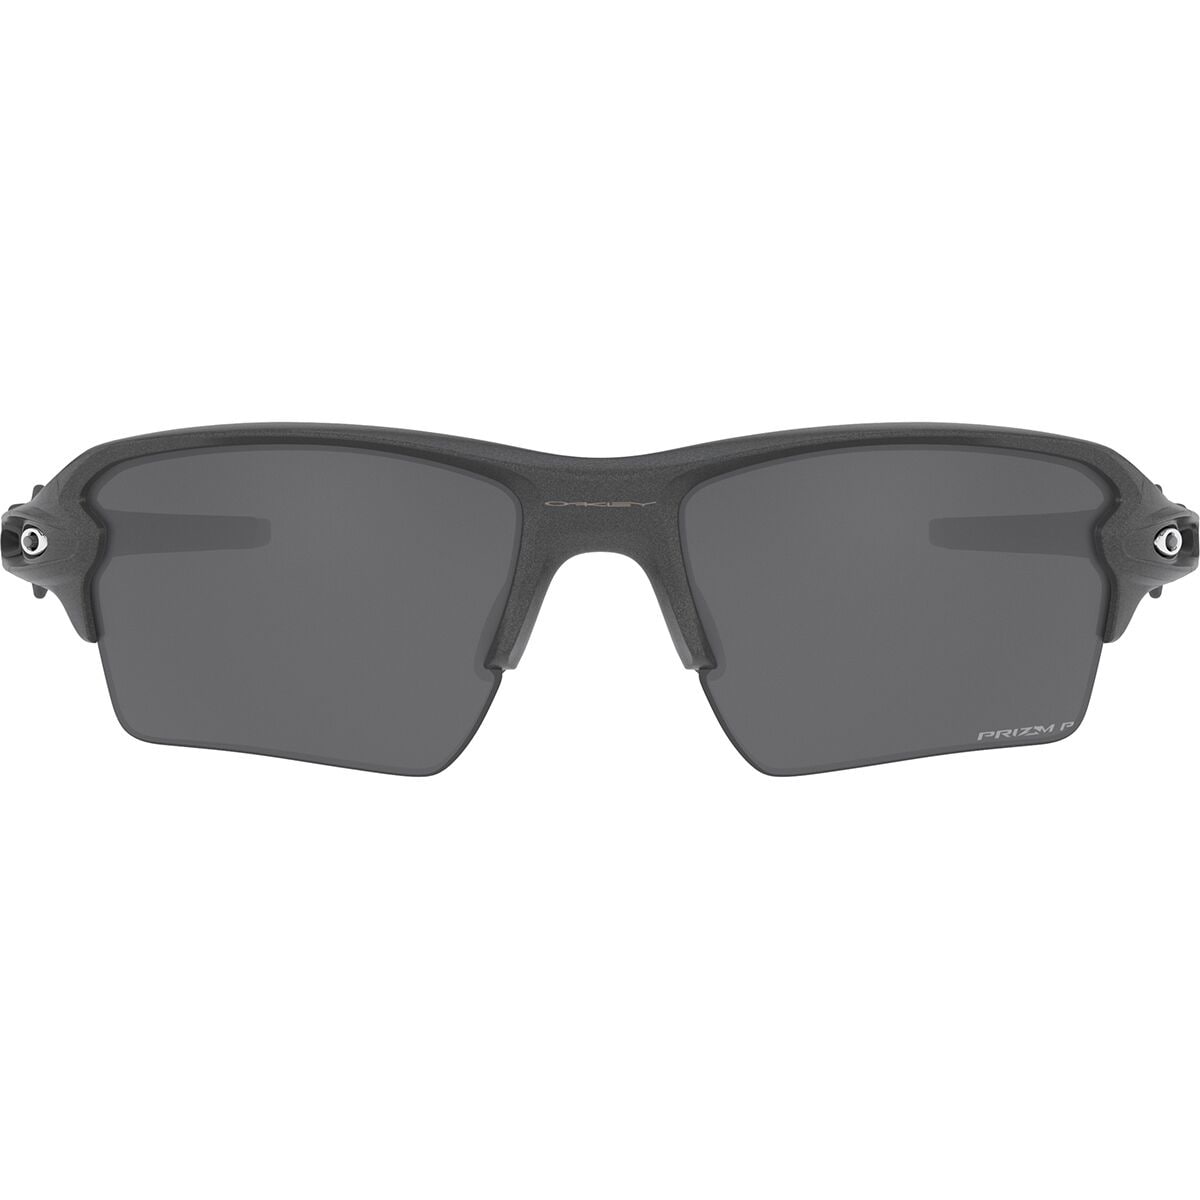 Oakley Flak 2.0 XL Prizm Polarized Sunglasses Steel/Prizm Black Polarized, One Size - Men's -  0OO9188-9188F859-59